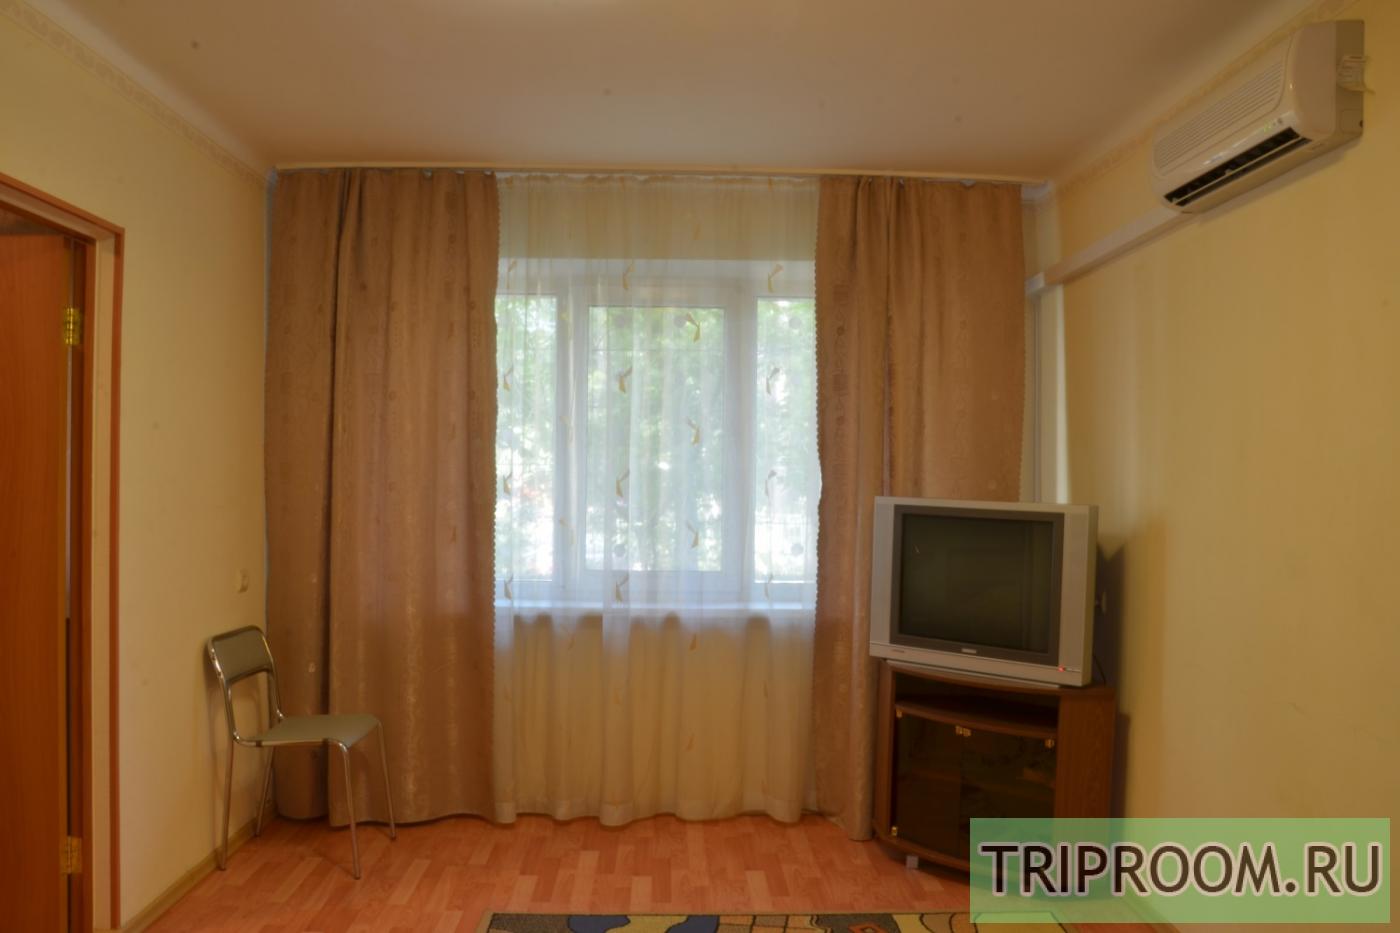 2-комнатная квартира посуточно (вариант № 10577), ул. Тимирязева улица, фото № 3